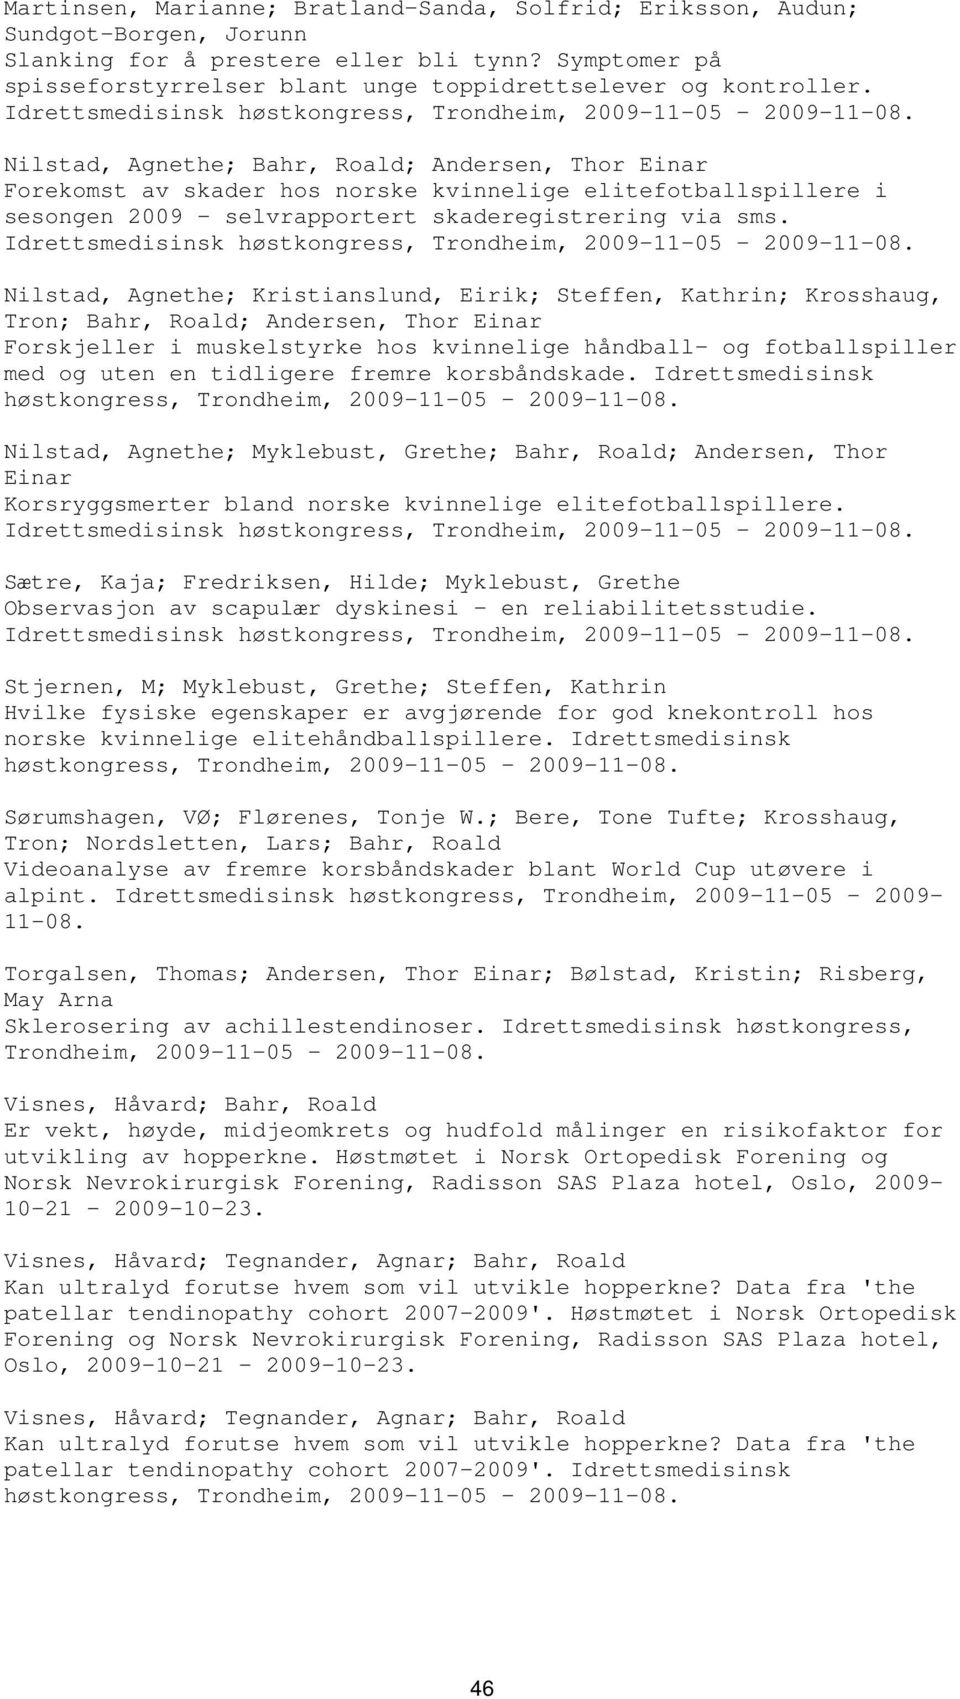 Nilstad, Agnethe; Bahr, Roald; Andersen, Thor Einar Forekomst av skader hos norske kvinnelige elitefotballspillere i sesongen 2009 - selvrapportert skaderegistrering via sms.